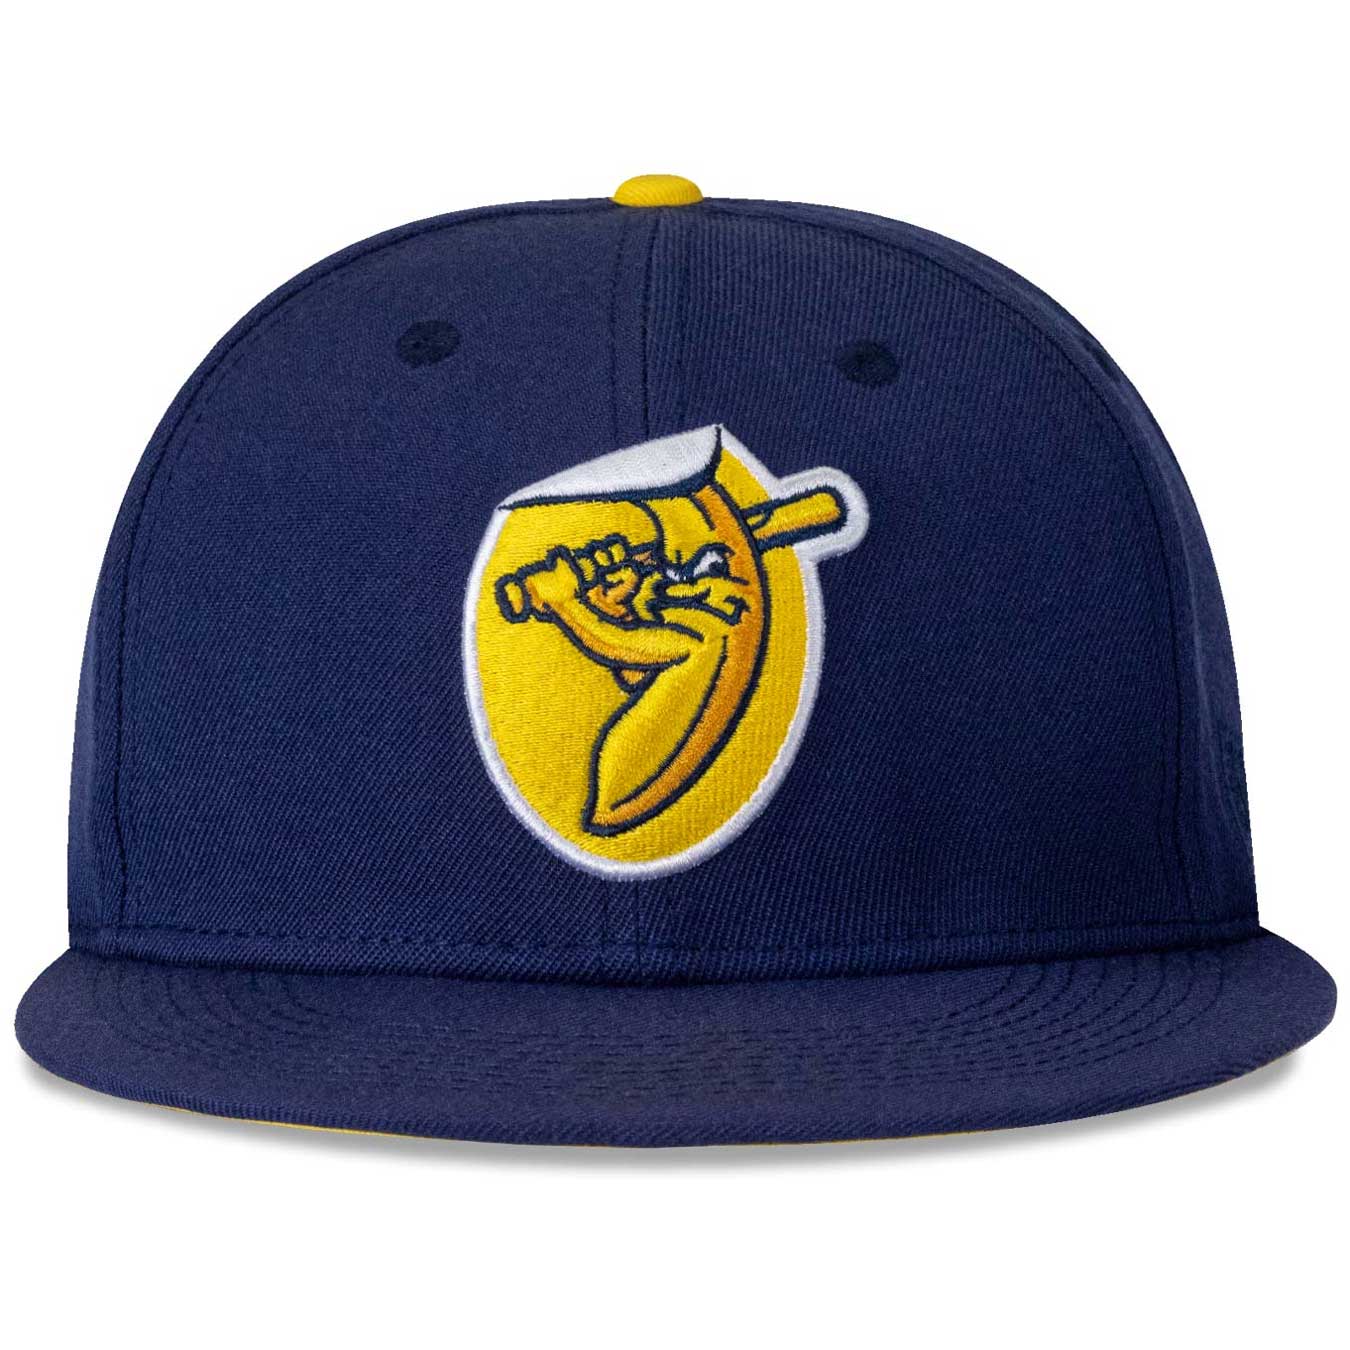 Baseballism Savannah Bananas Snapback Cap